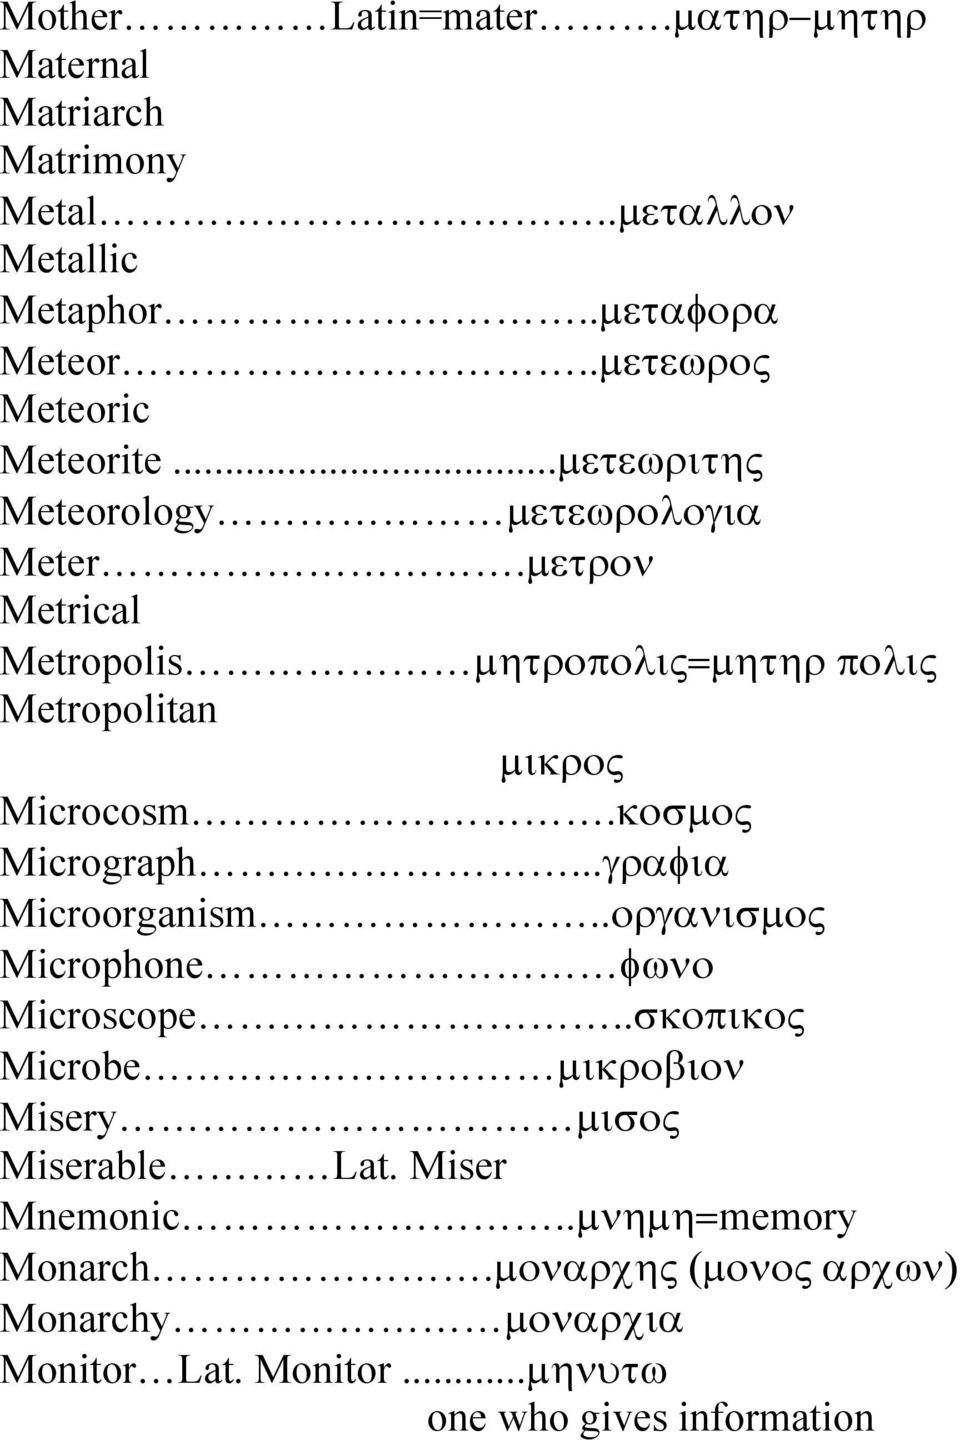 µετρον Metrical Metropolis µητροπολις=µητηρ πολις Metropolitan µικρος Microcosm.κοσµος Micrograph...γραφια Microorganism.